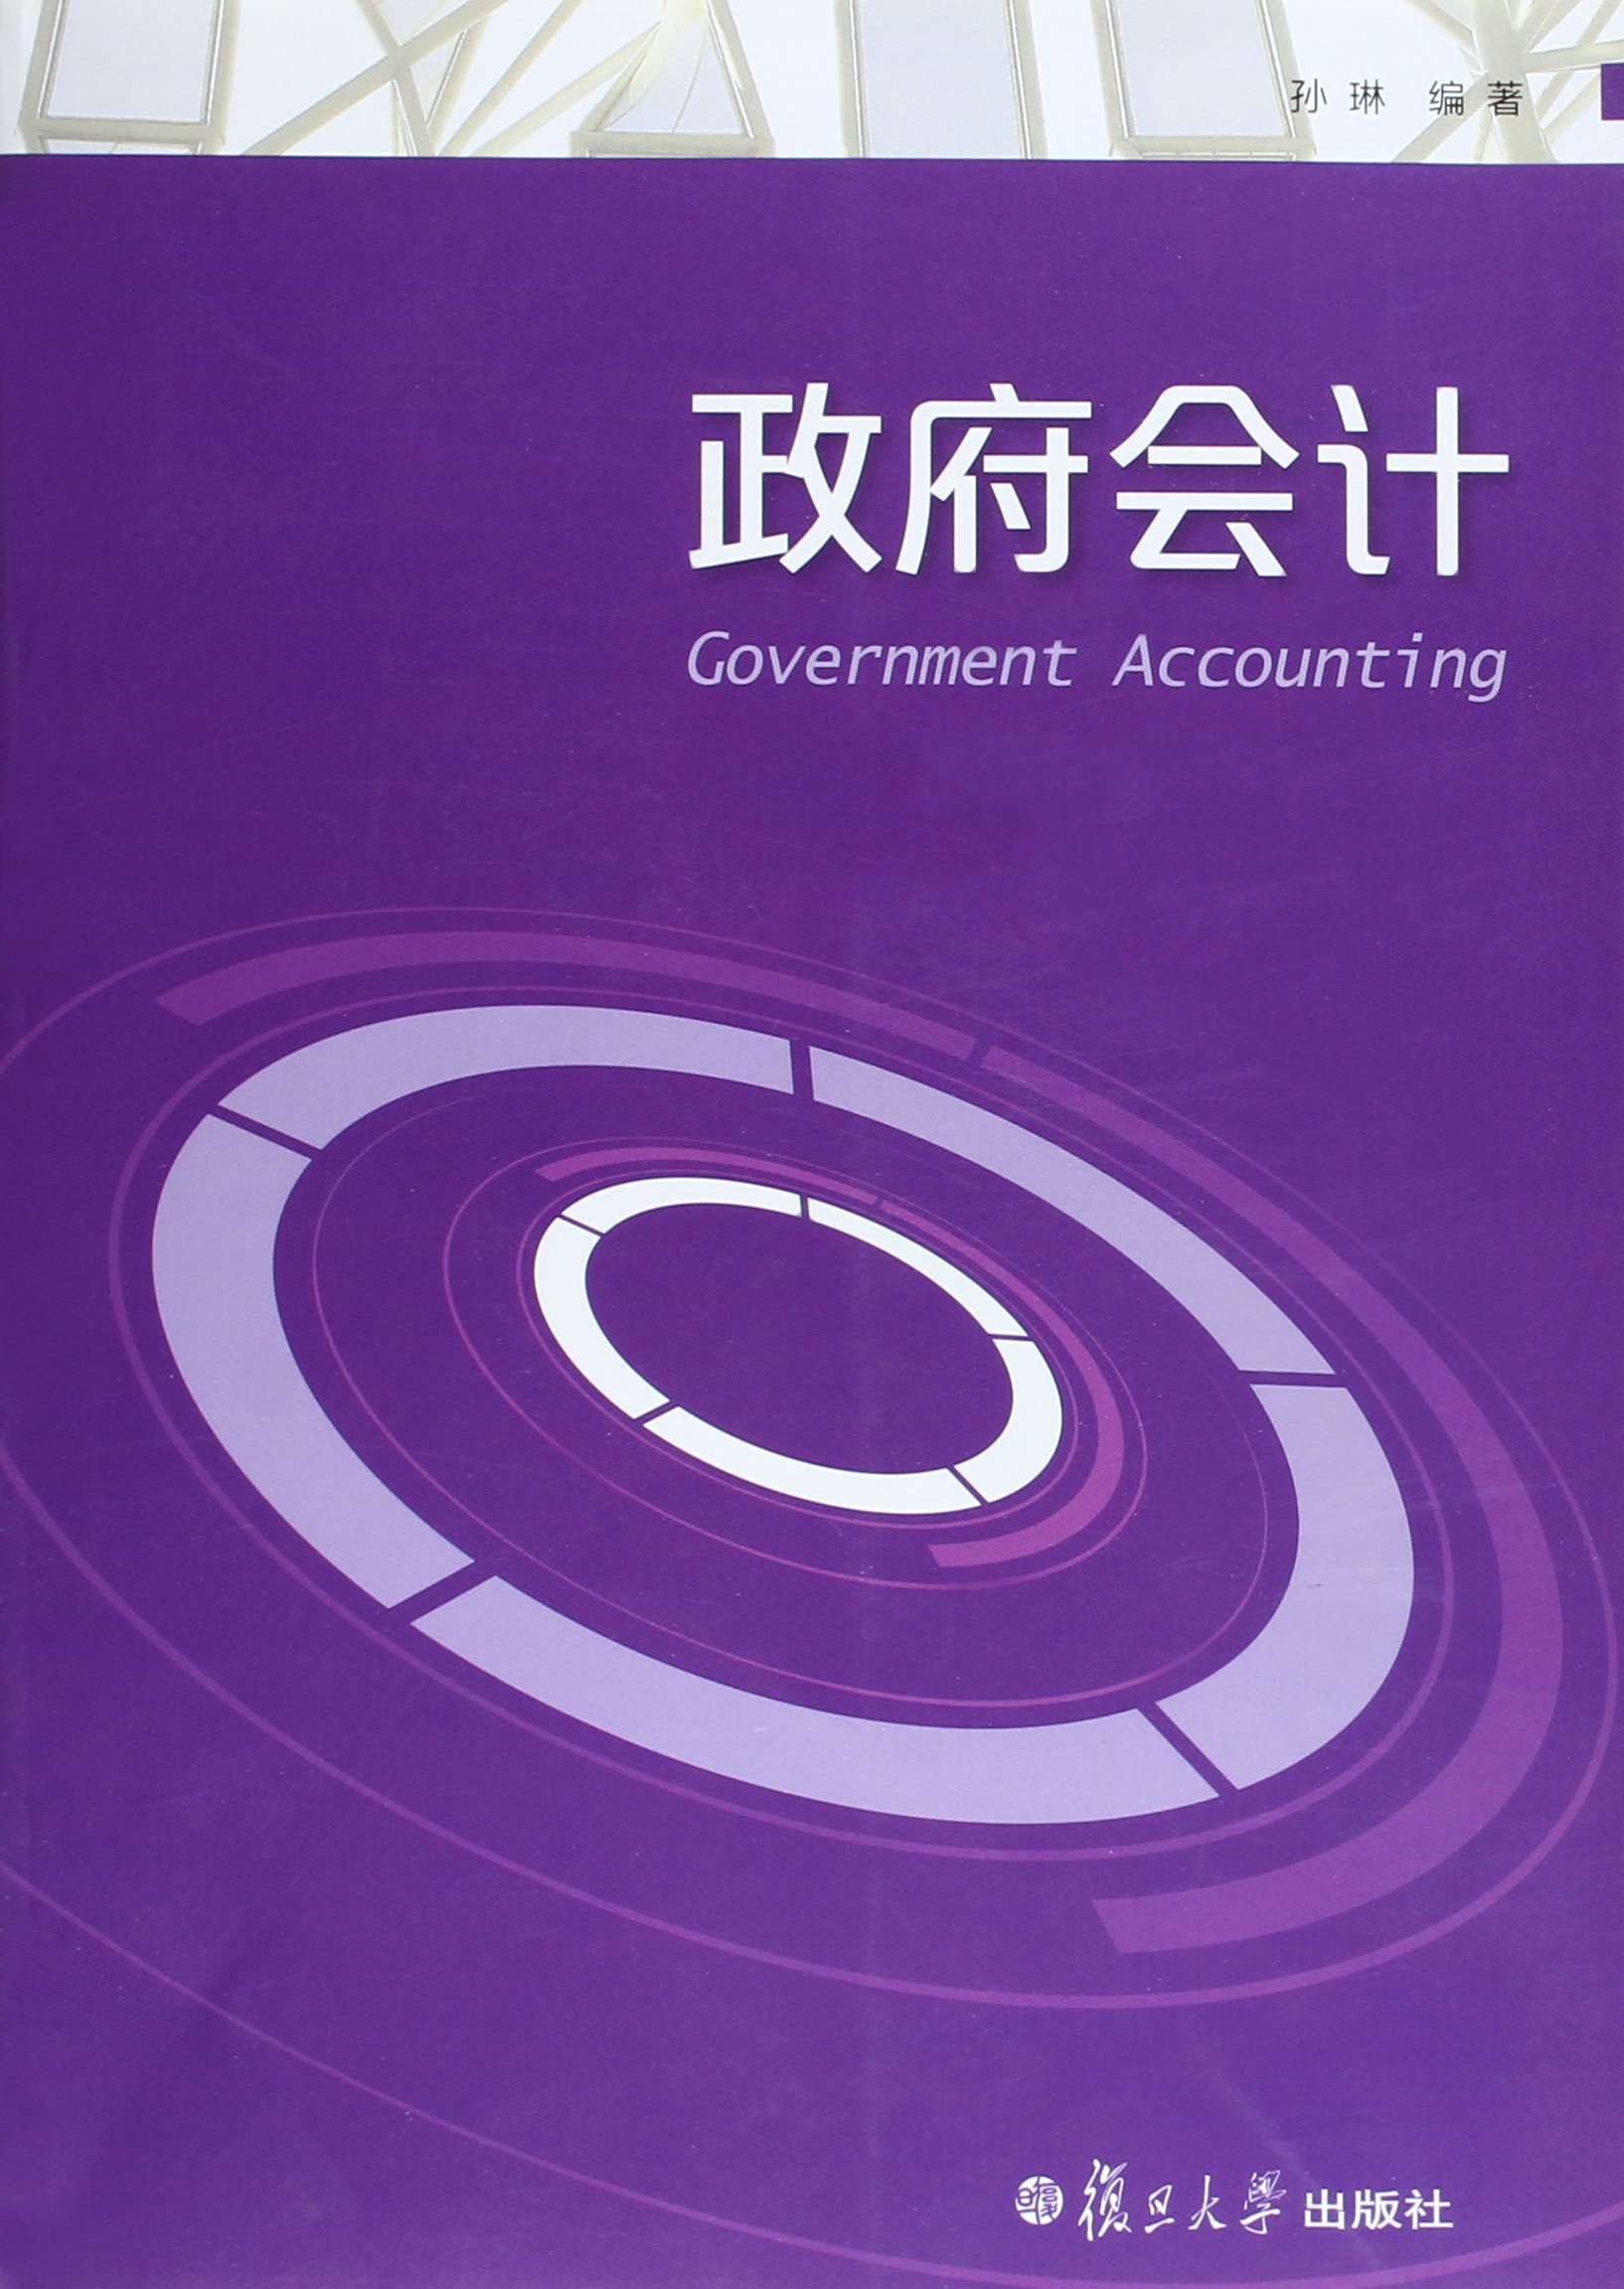 政府會計(孫琳編著的書籍)